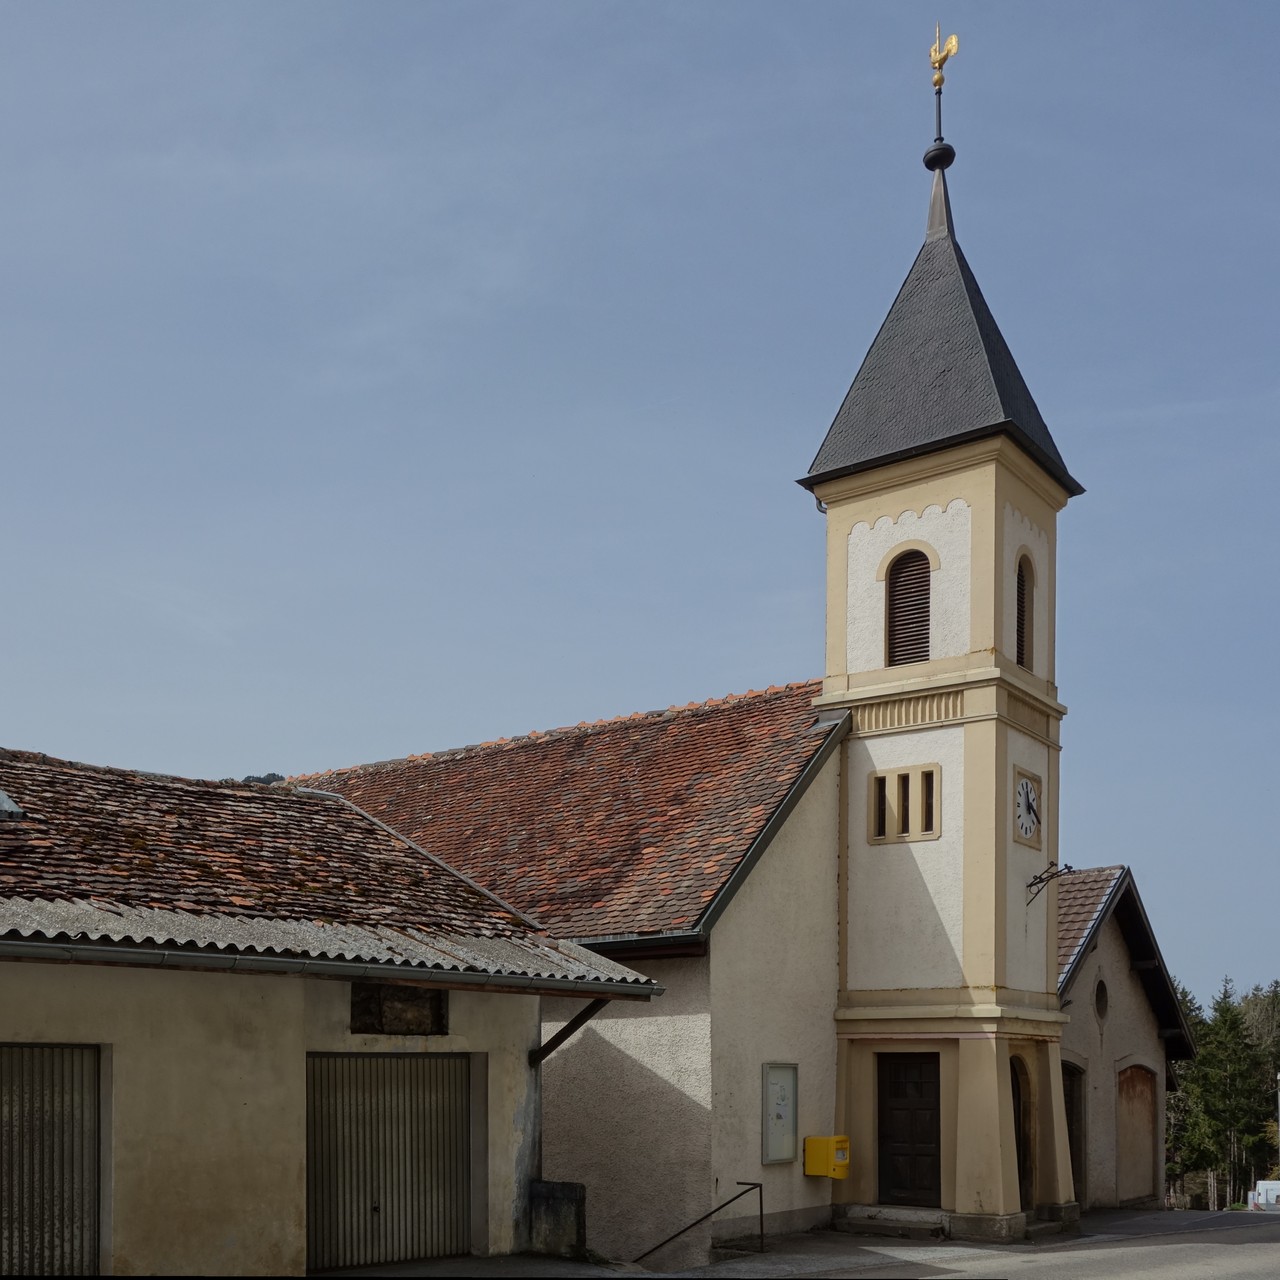 Chapelle de Brot-Dessous (photo: CC-by Nicolas Friedli)